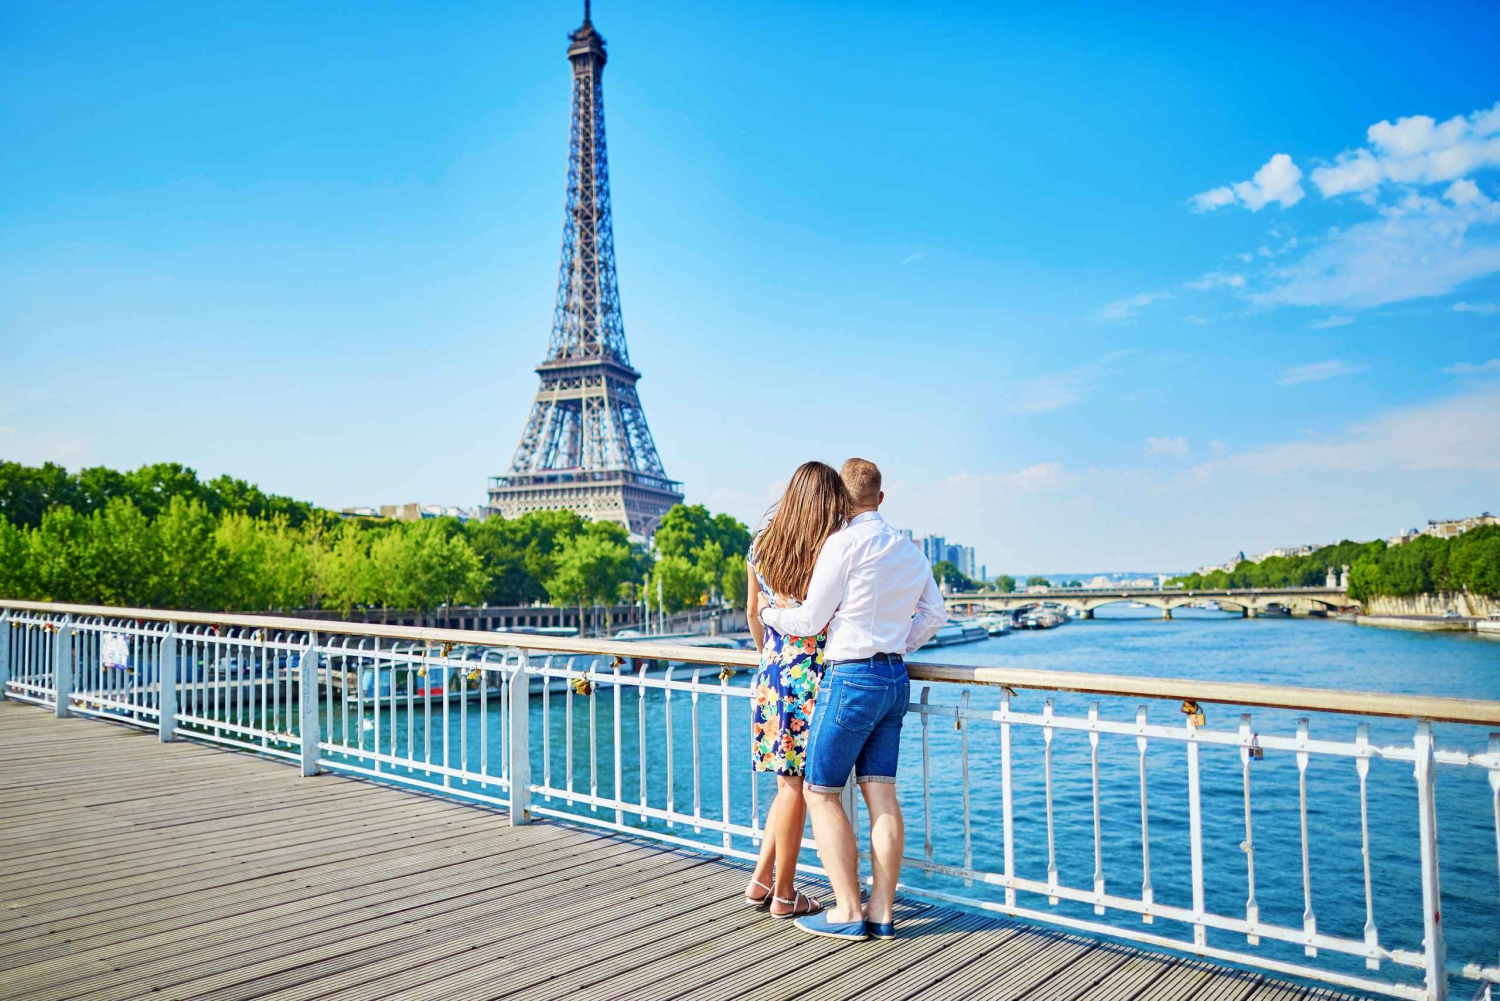 Päiväretki Pariisiin Eiffel-tornin ja lounasristeilyn kanssa